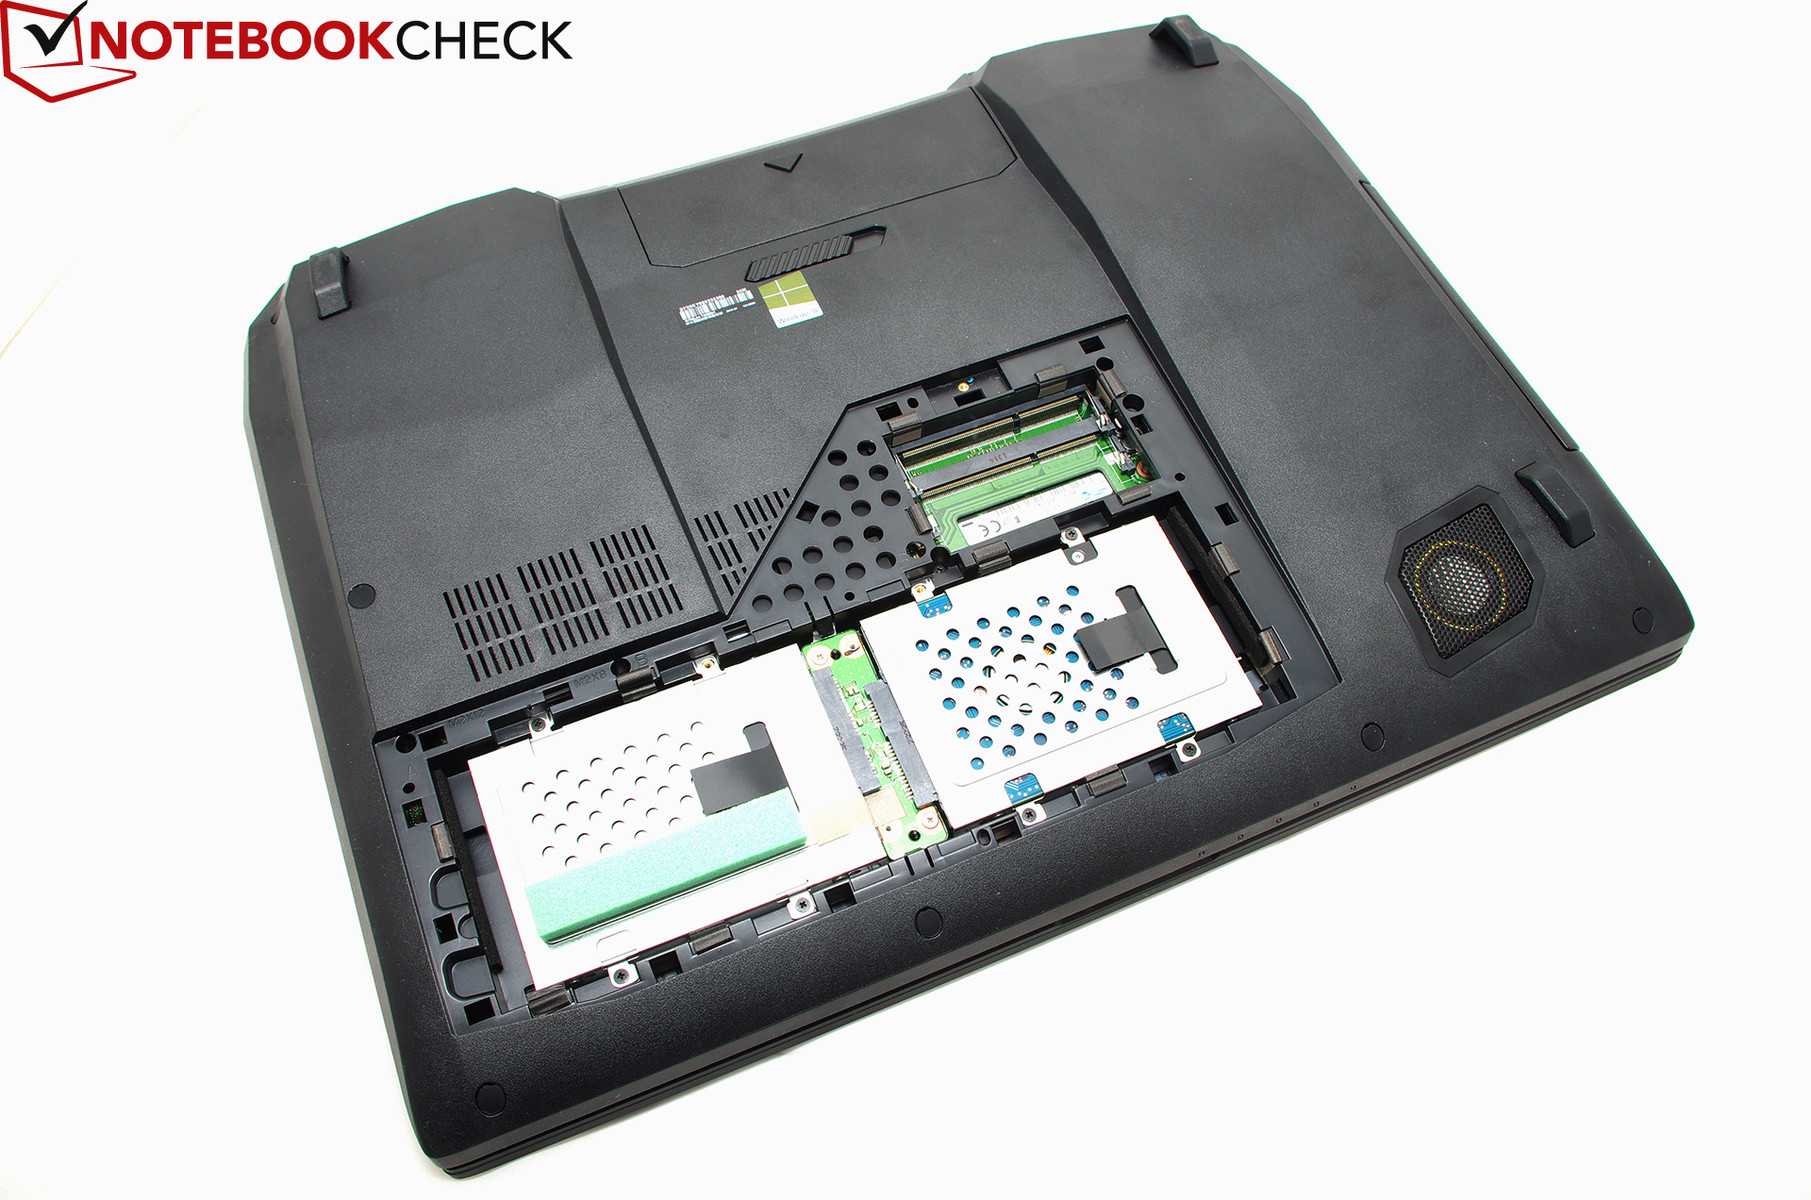 Ноутбук asus rog g750jh-cv155h — купить, цена и характеристики, отзывы